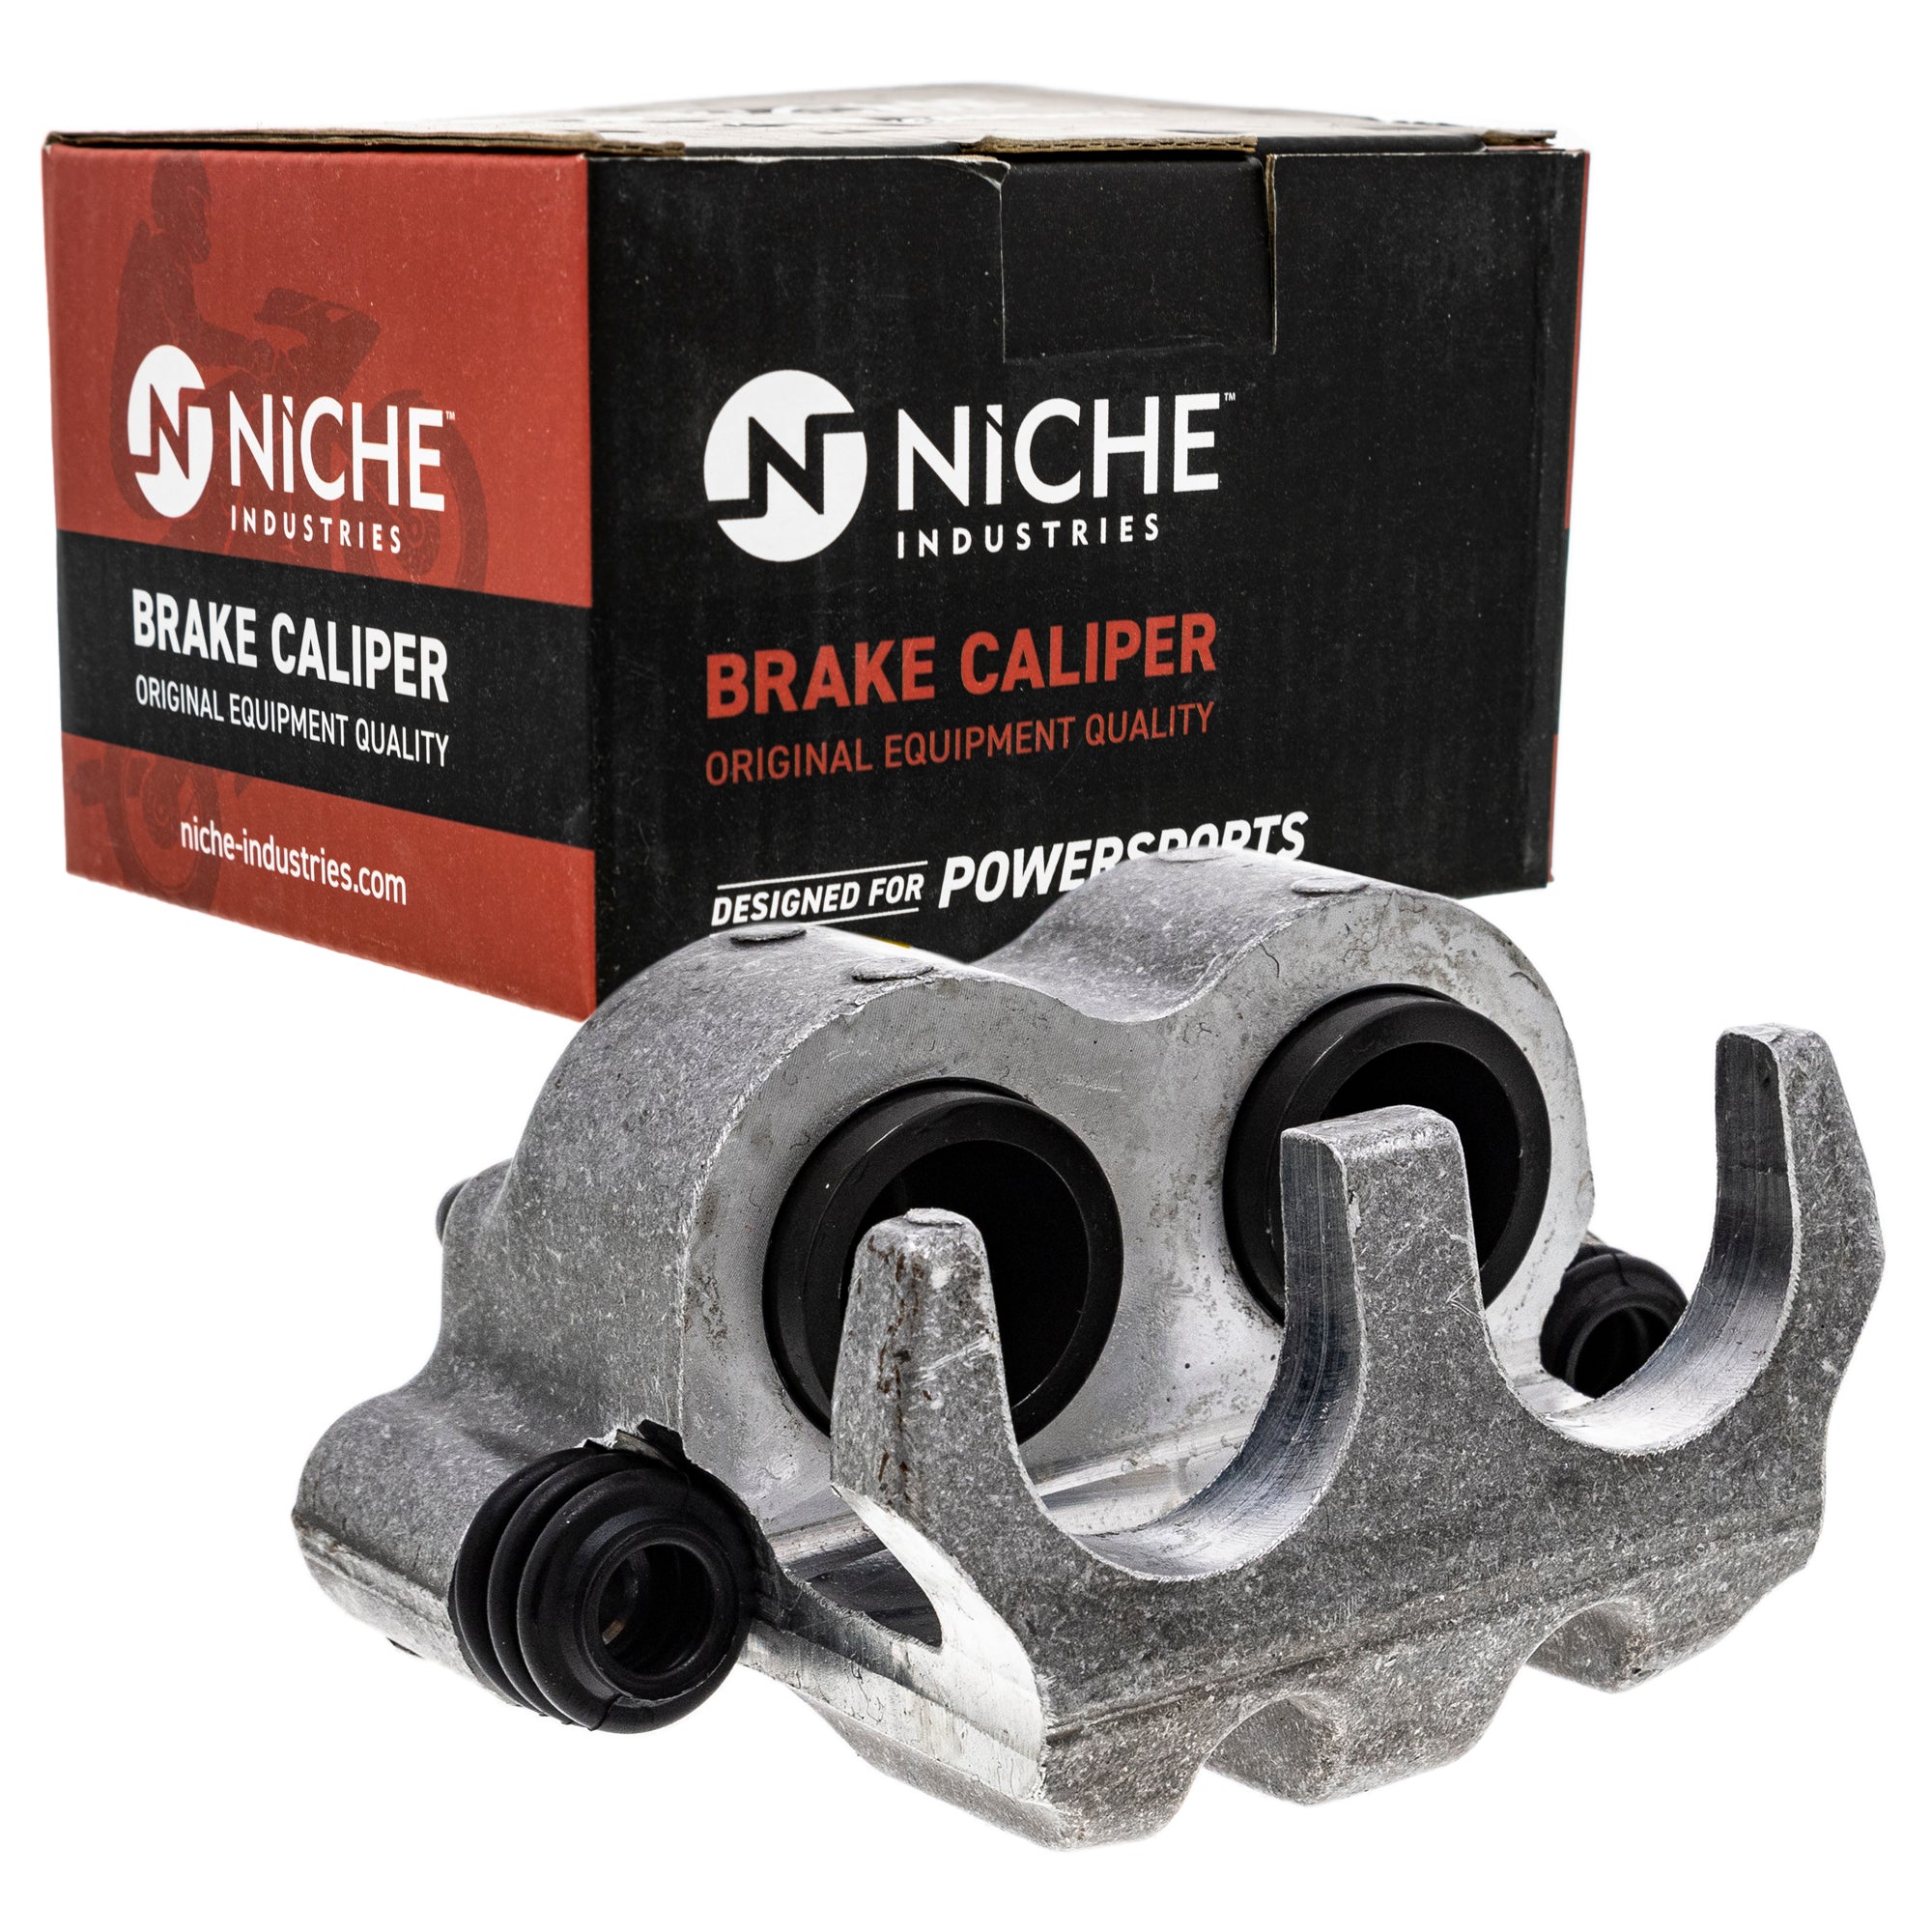 NICHE MK1007819 Brake Caliper Kit